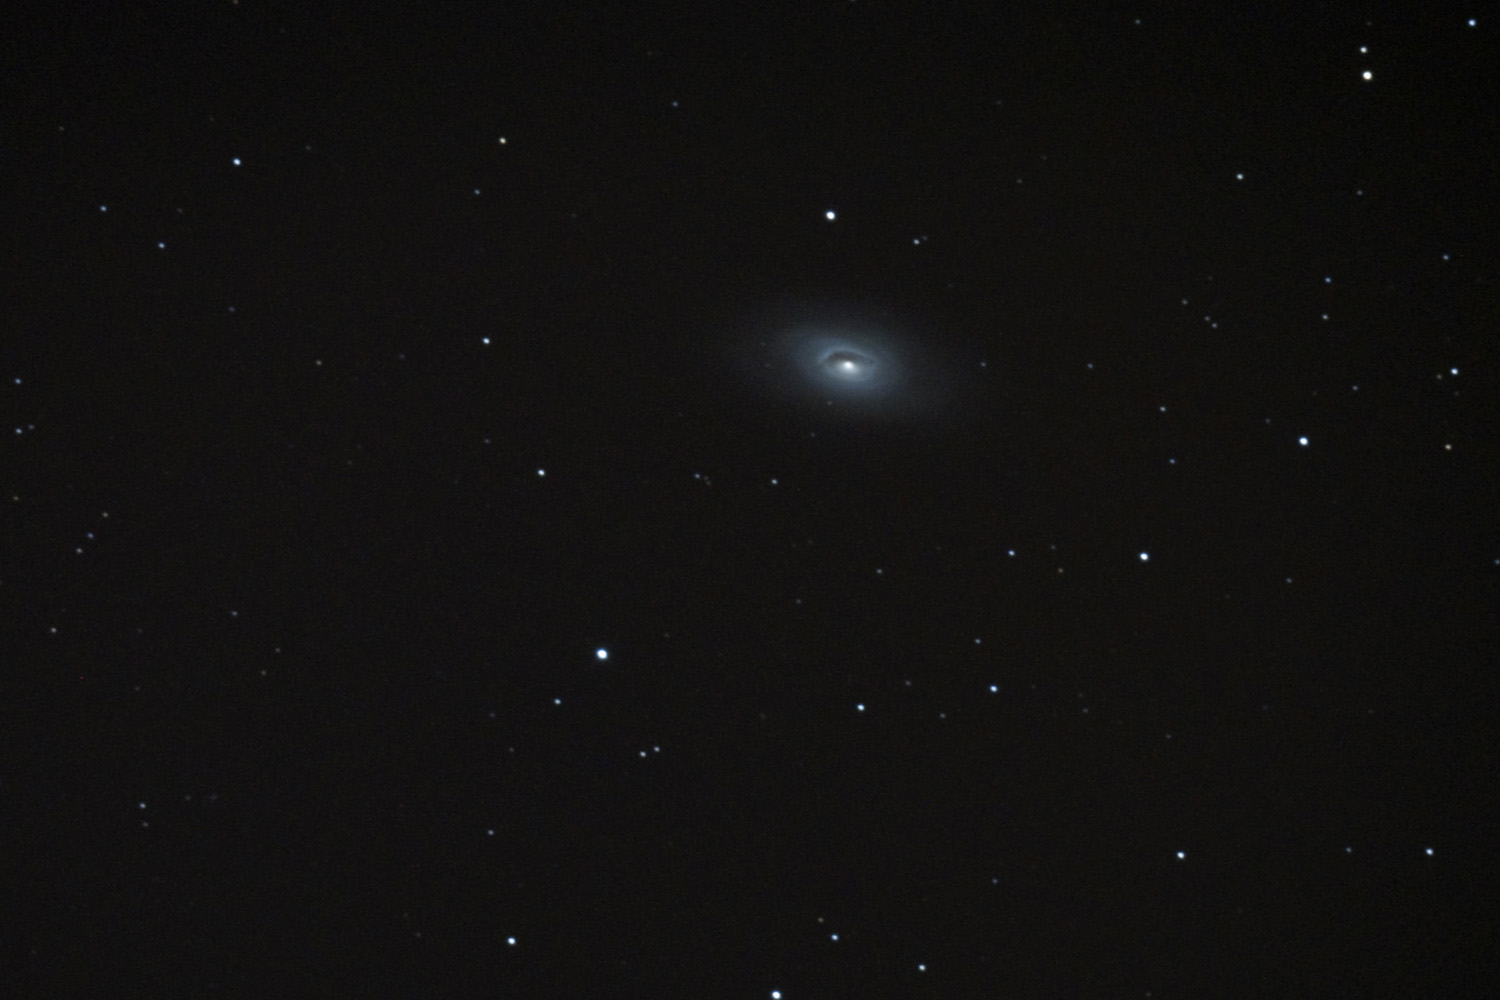 M-64, the Black Eye galaxy